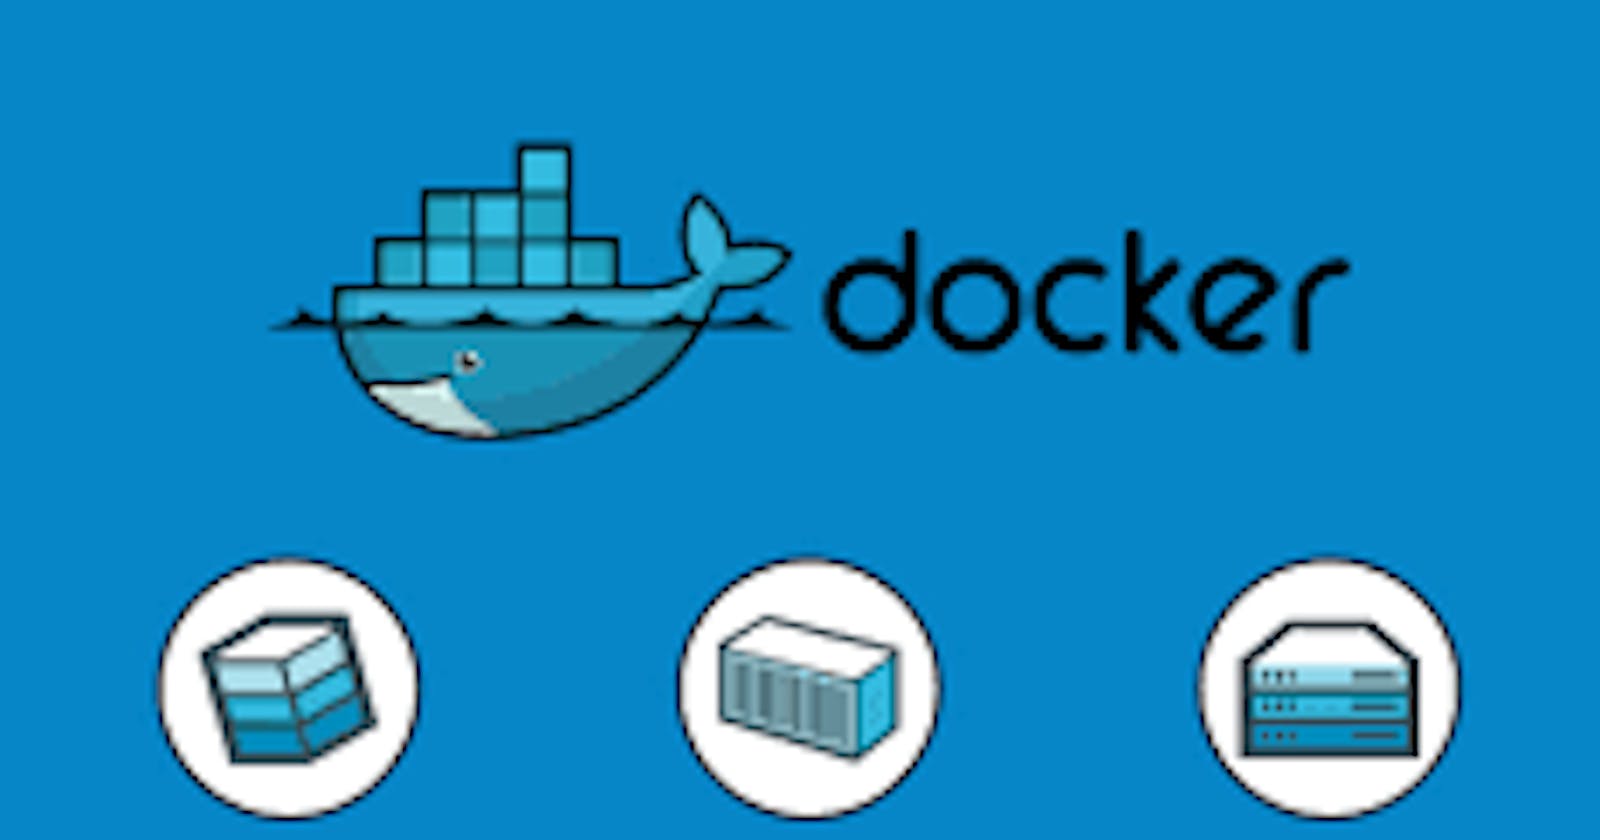 10 Basic commands for Docker